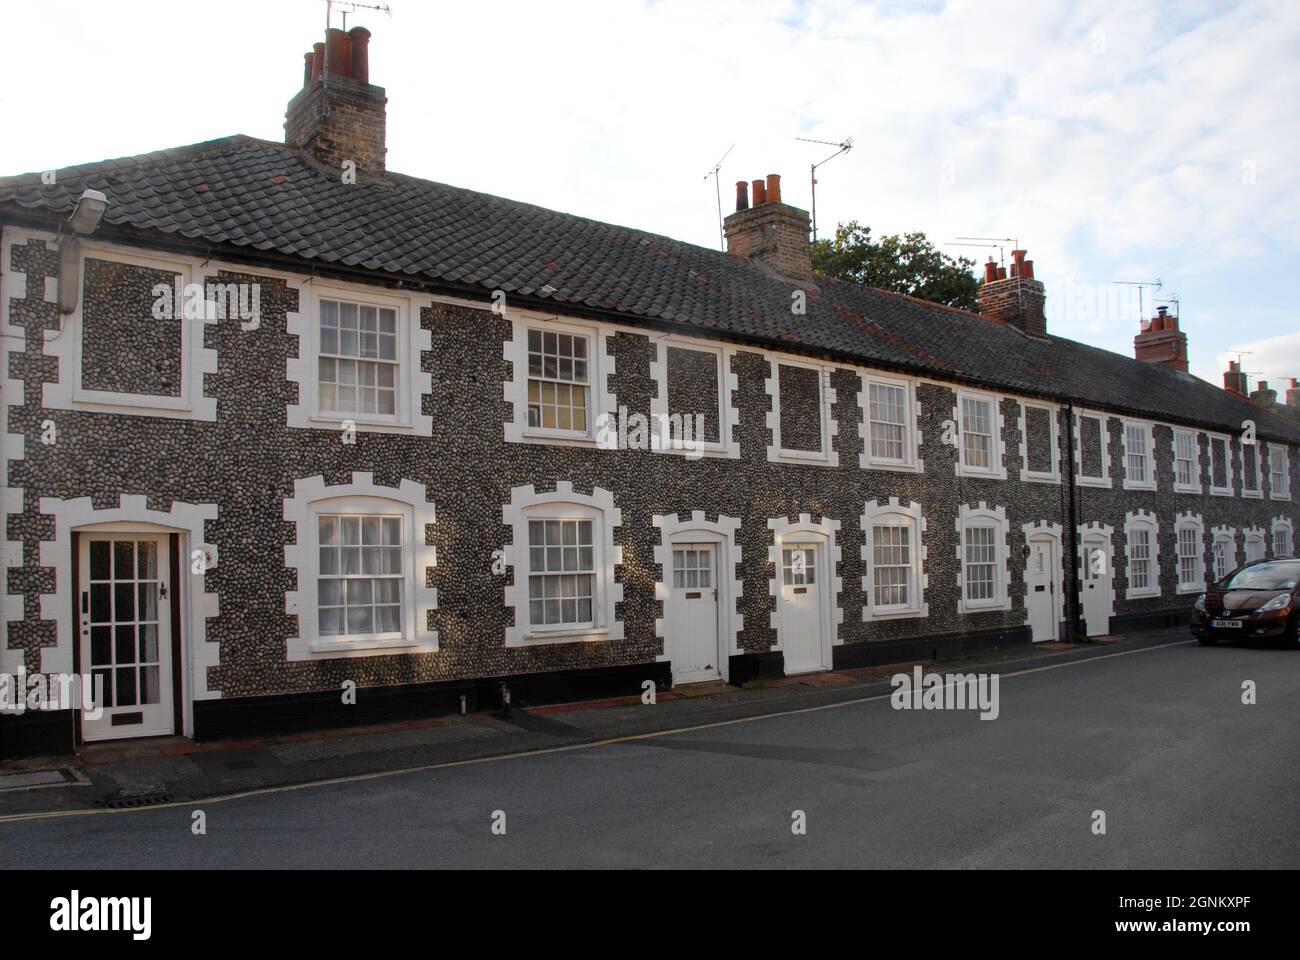 Fila di case terrazzate con pareti di pietra focaia nella città mercato di Holt, Norfolk, Inghilterra con alcune finestre superiori bloccate in, 2013 Foto Stock